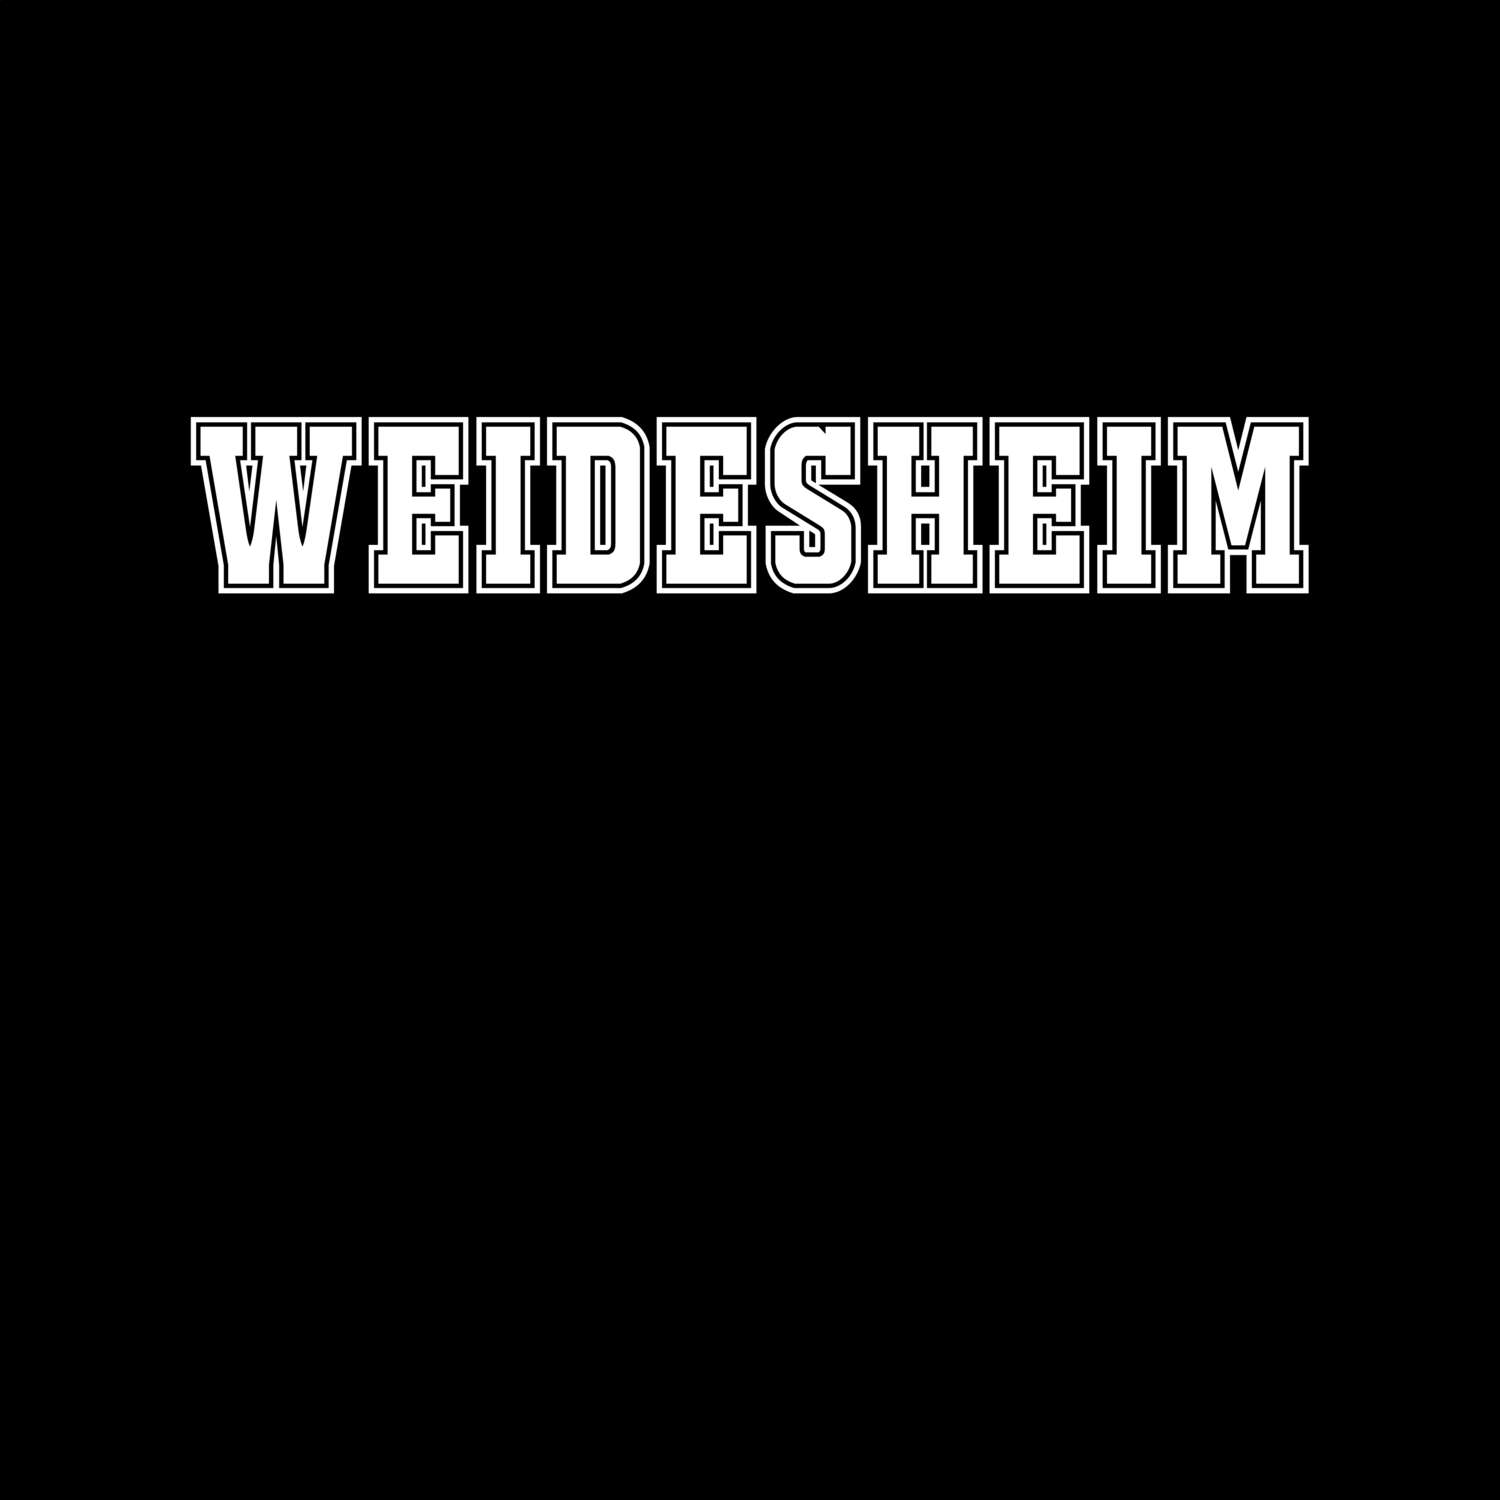 Weidesheim T-Shirt »Classic«